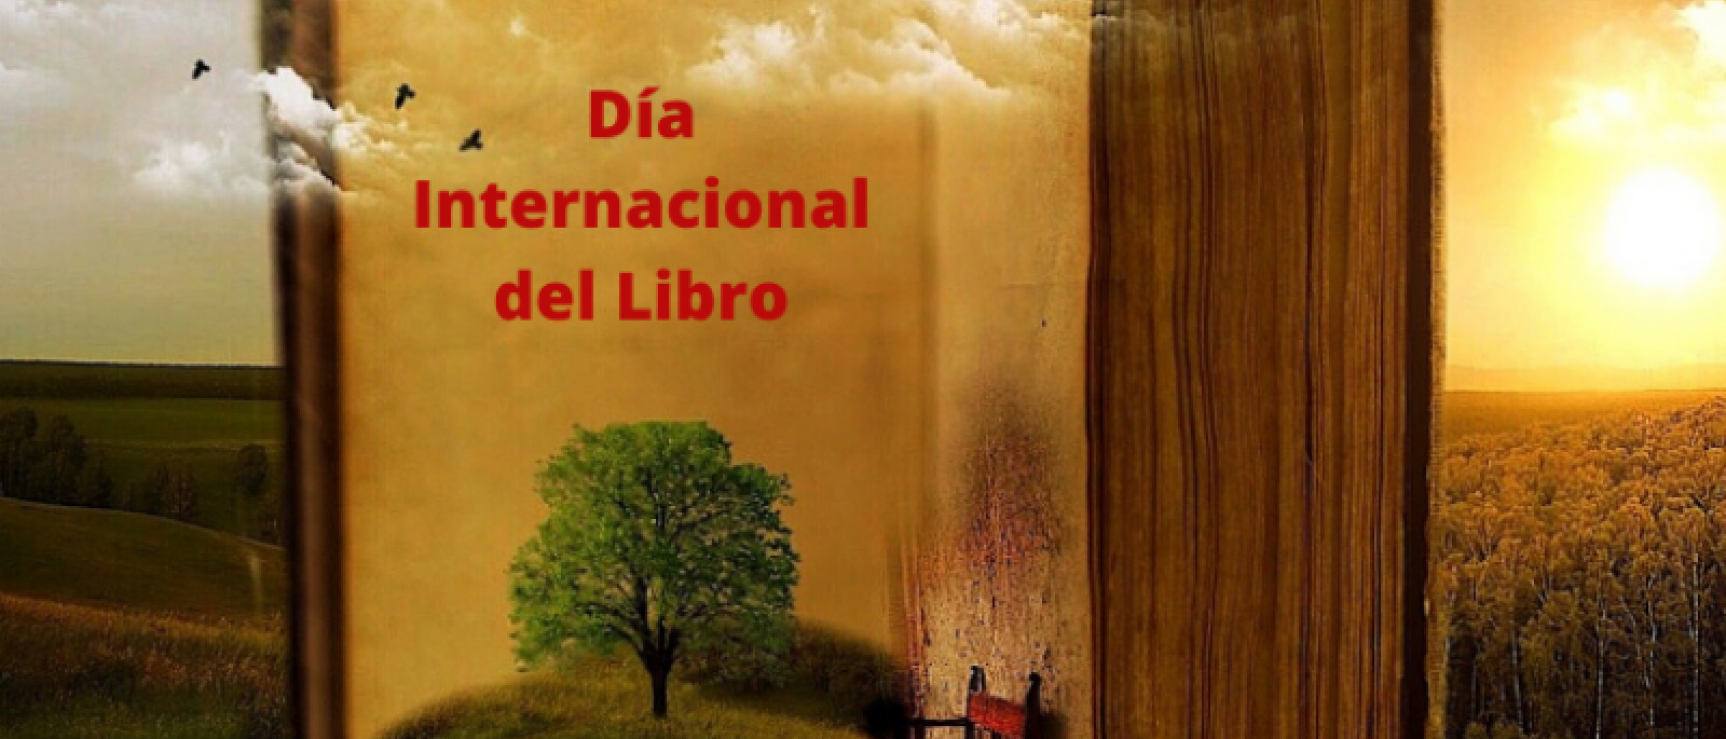 Día Internacional del Libro